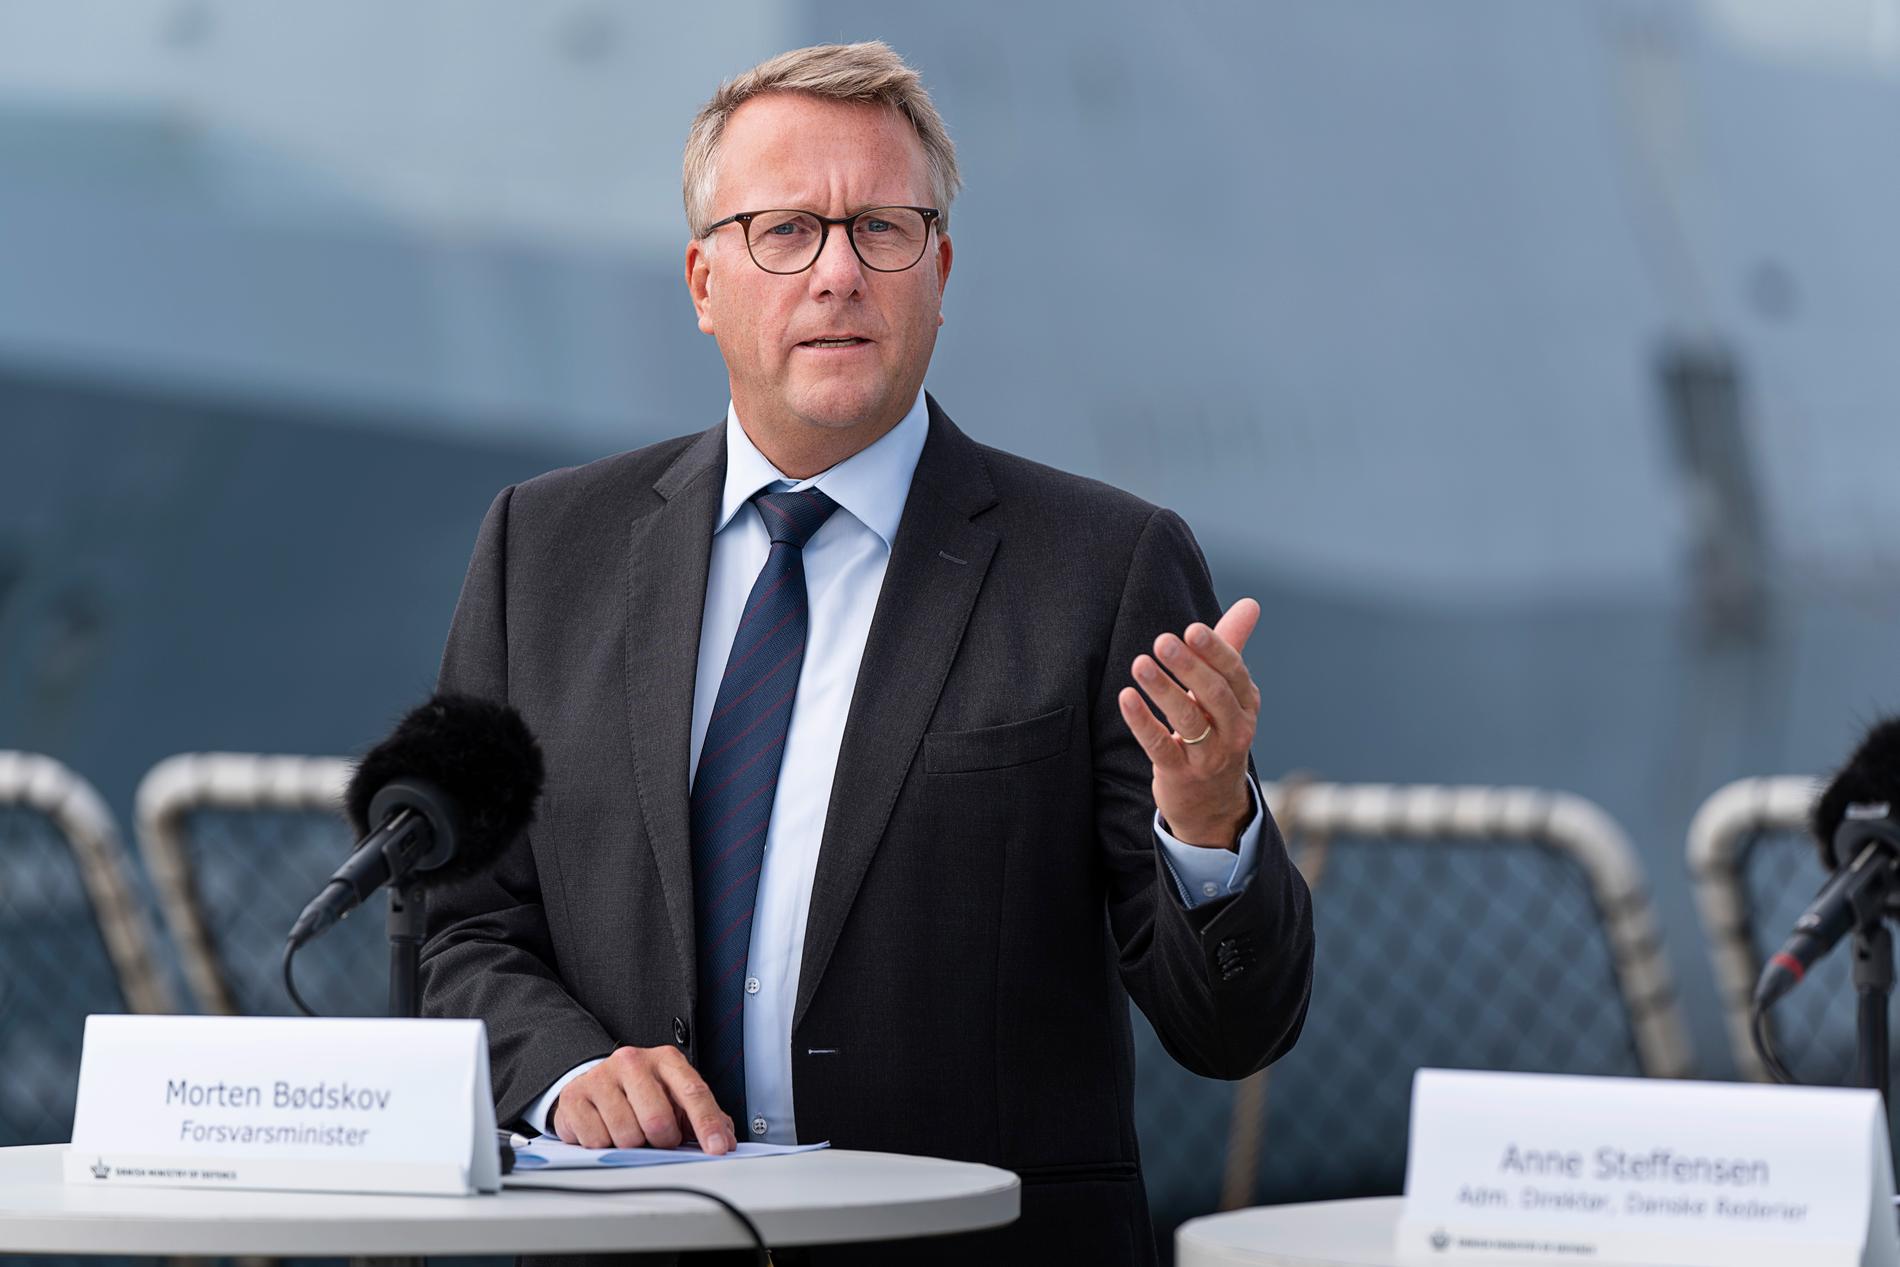 Danmarks försvarsminister Morten Bødskov presenterade satsningen vid en presskonferens på torsdagen.